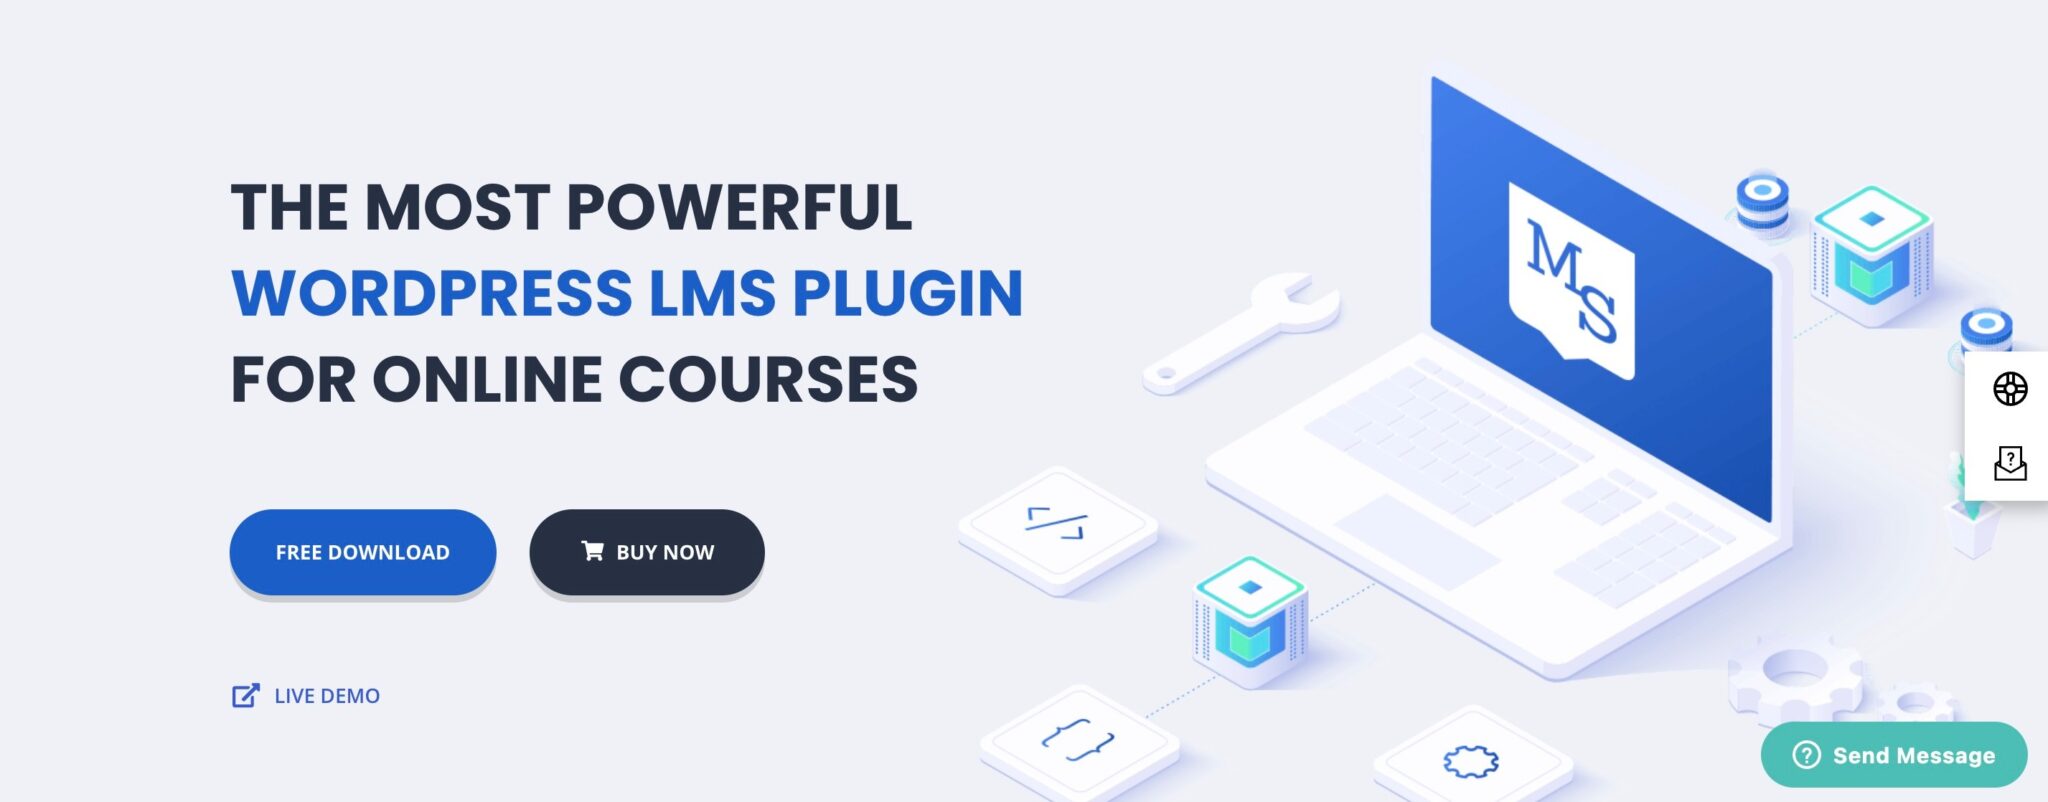 Best WordPress LMS Plugins - Masterstudy